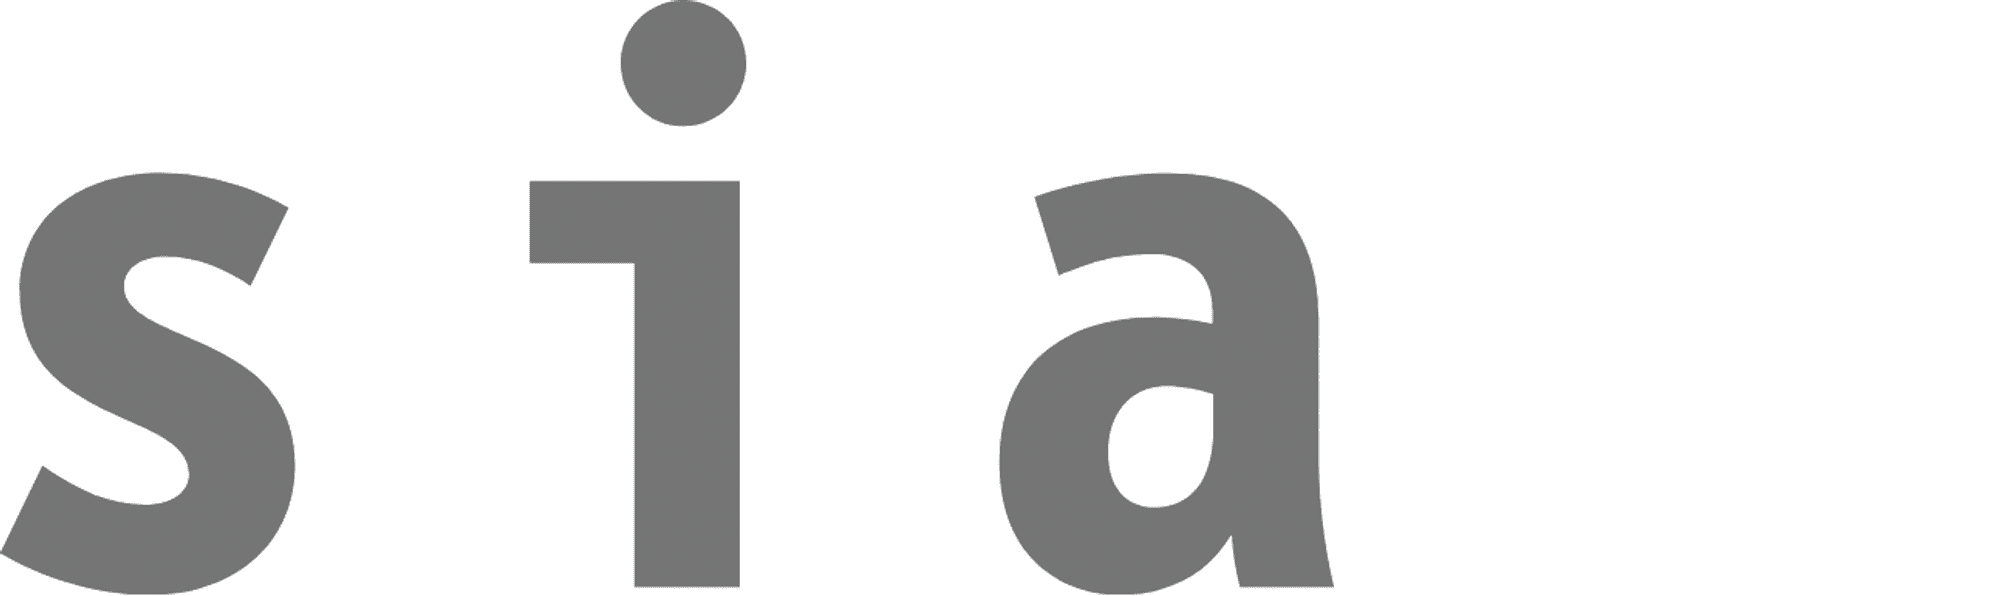 Sia logo grau ohne Rand klein